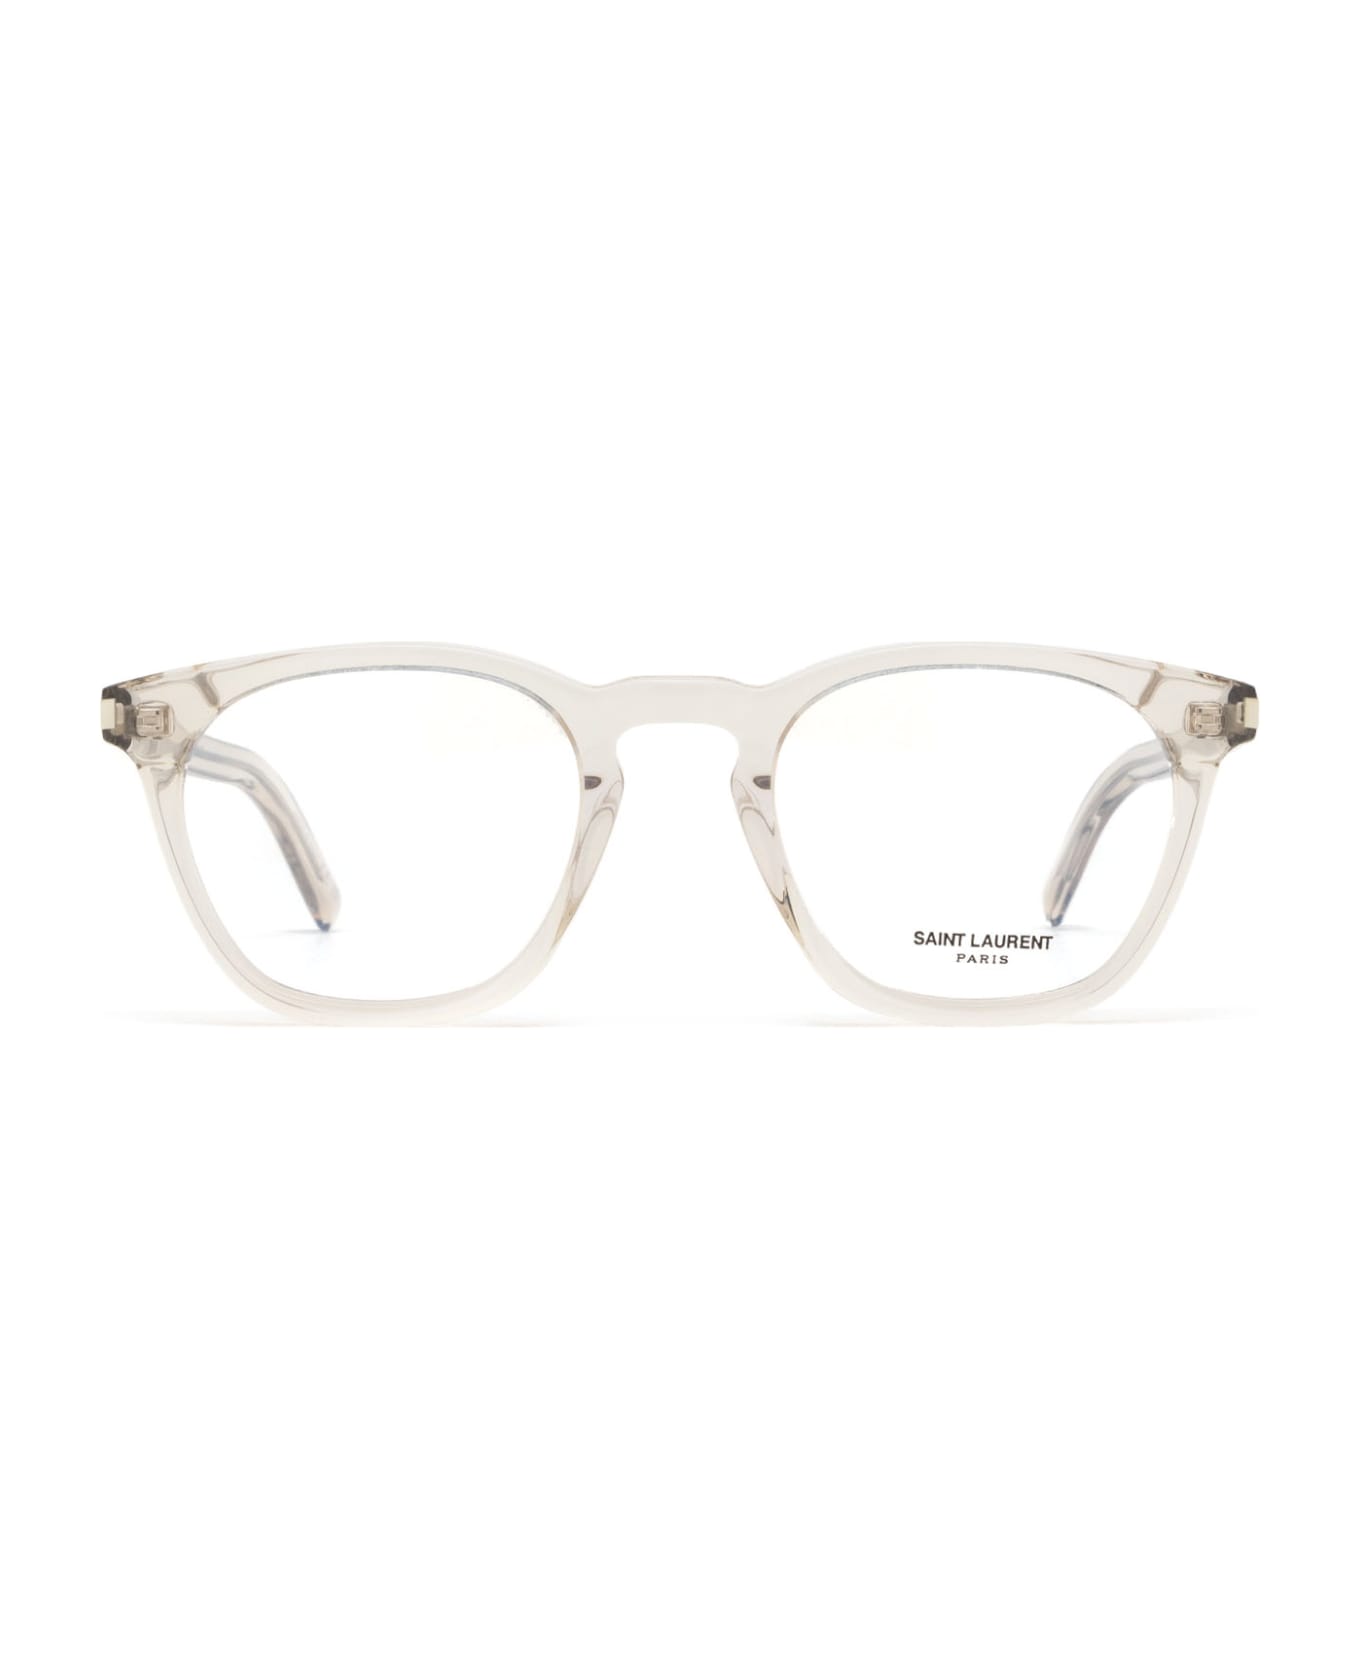 Saint Laurent Eyewear Sl 28 Opt Nude Glasses - Nude